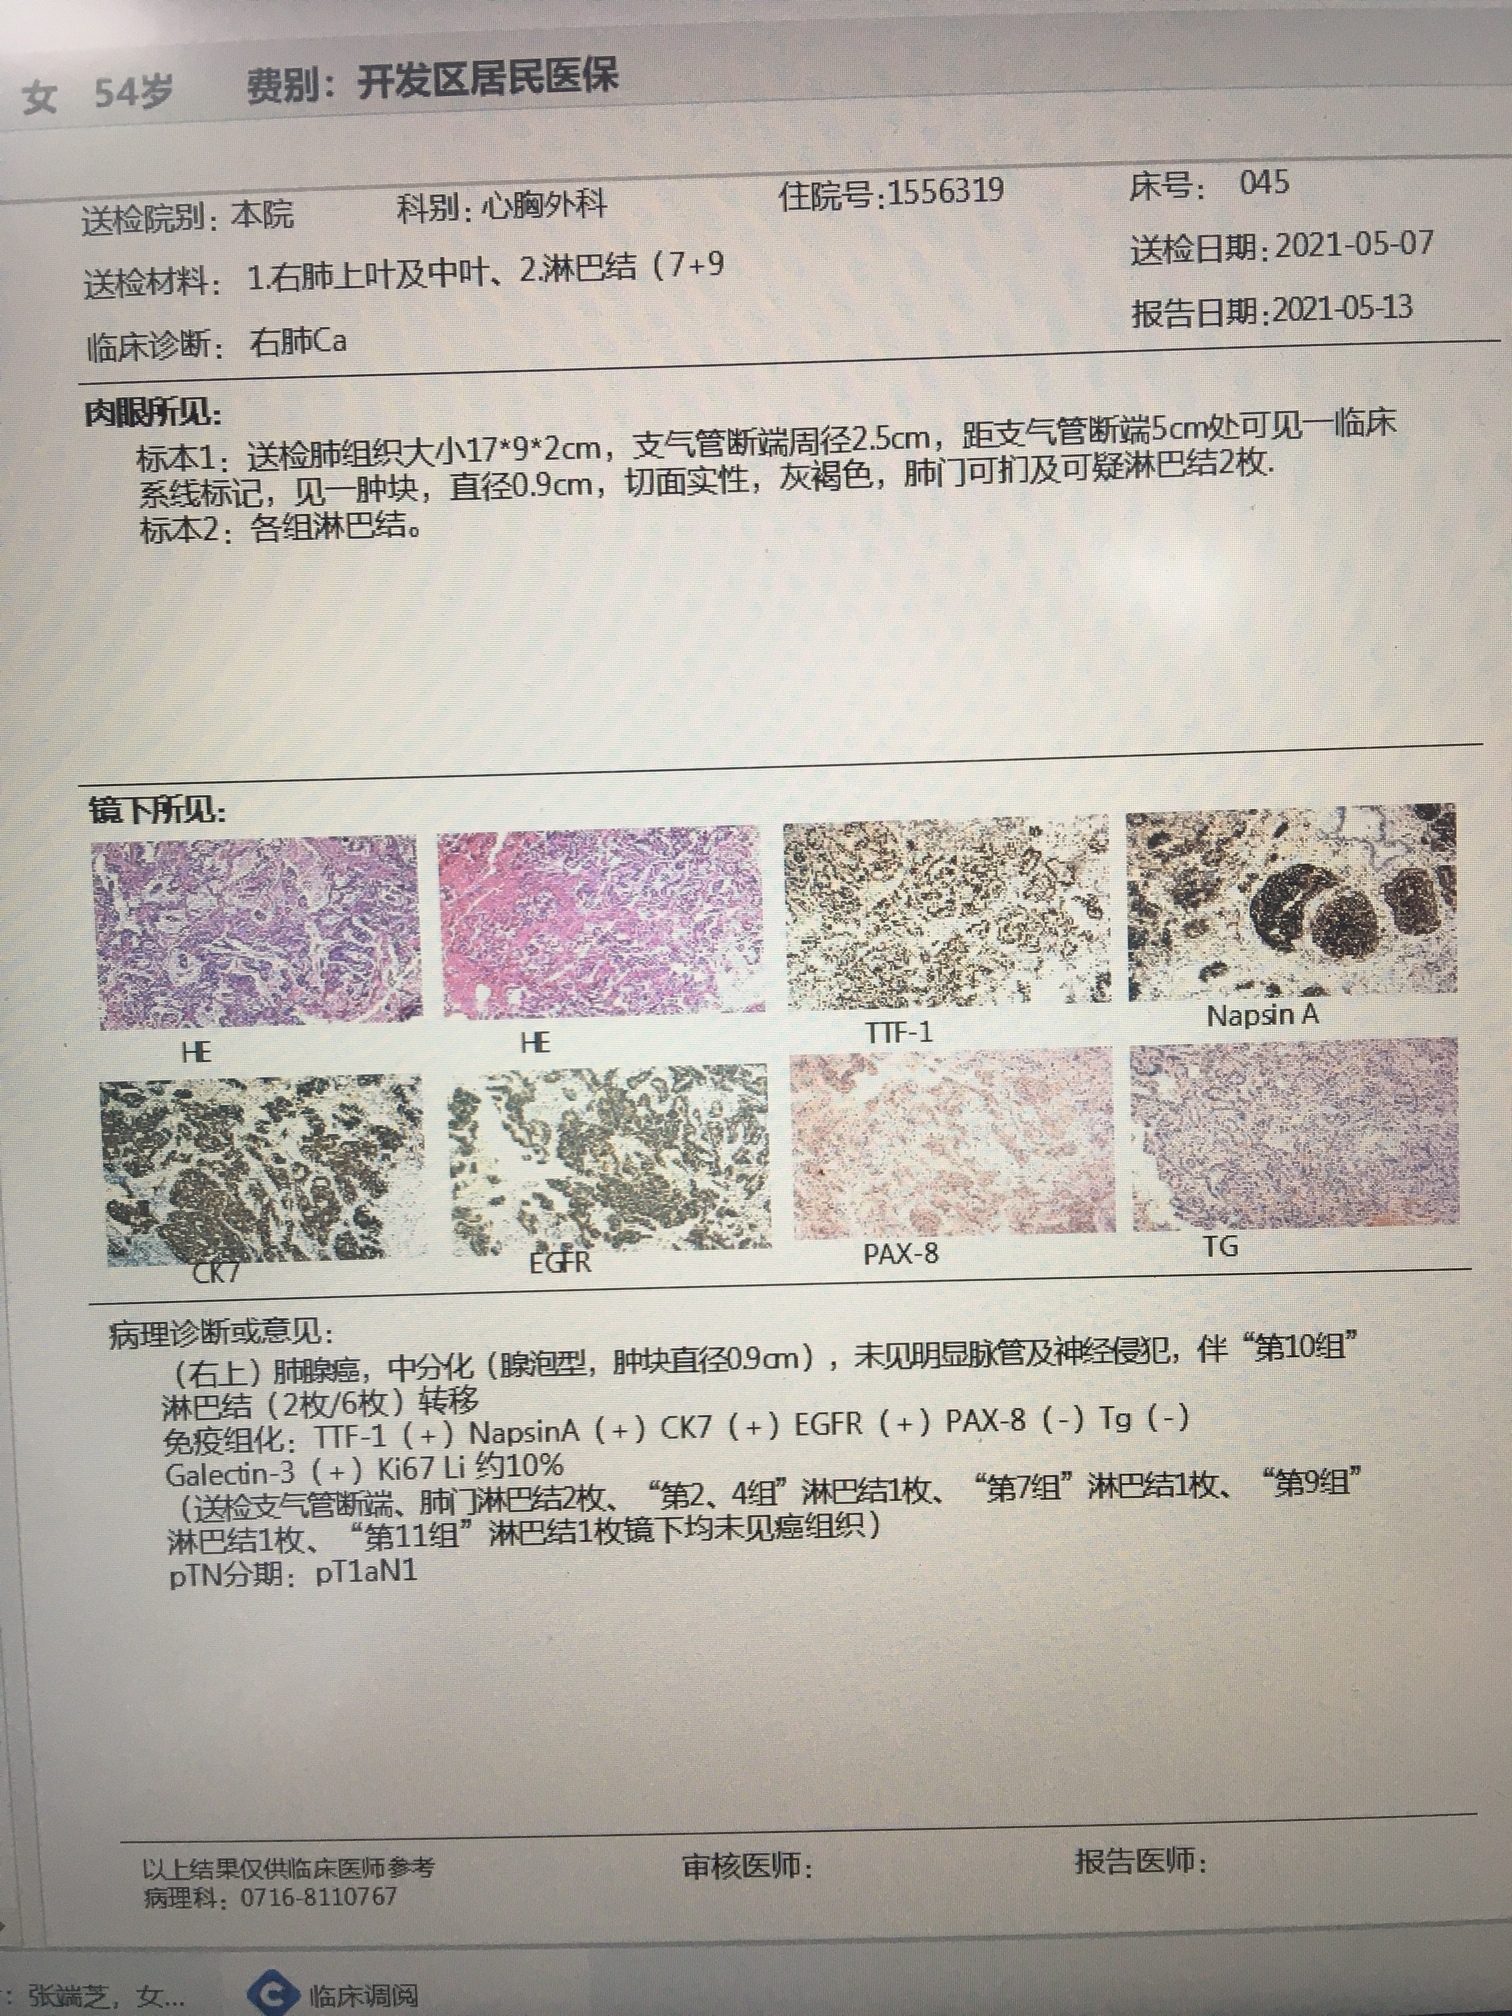 早期肺癌病理报告图片